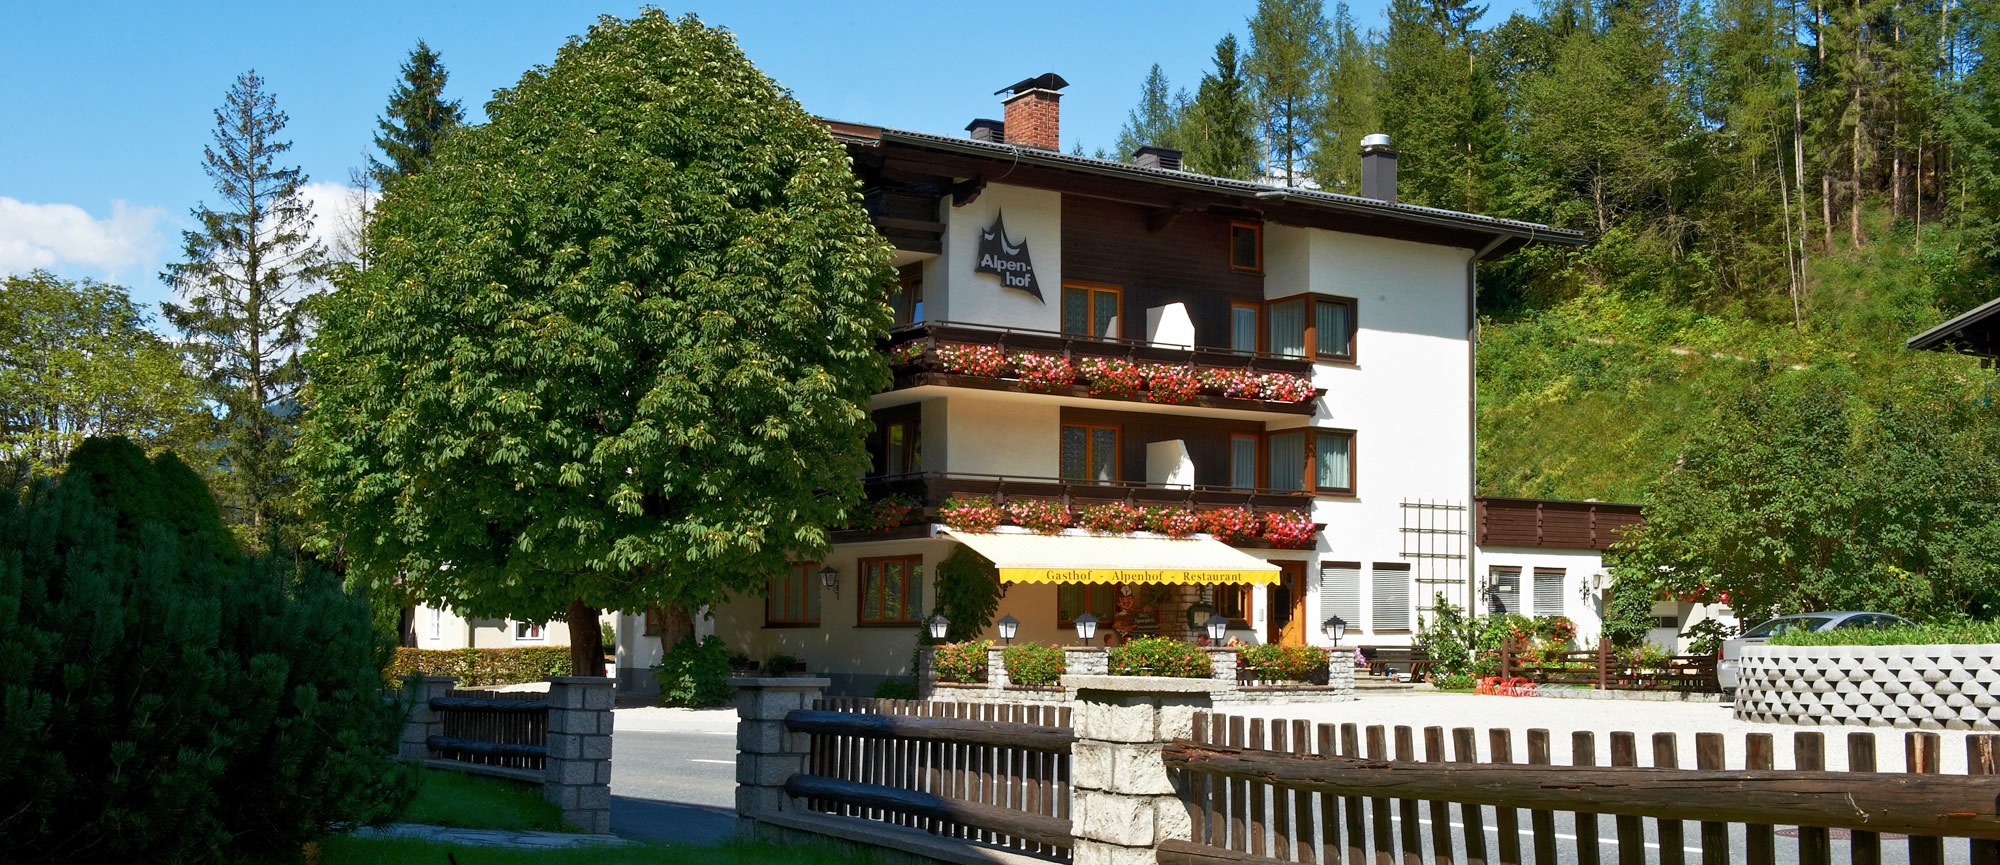 Hotel Gasthof Alpenhof in Annaberg im Lammertal im Salzburger Land, Österreich